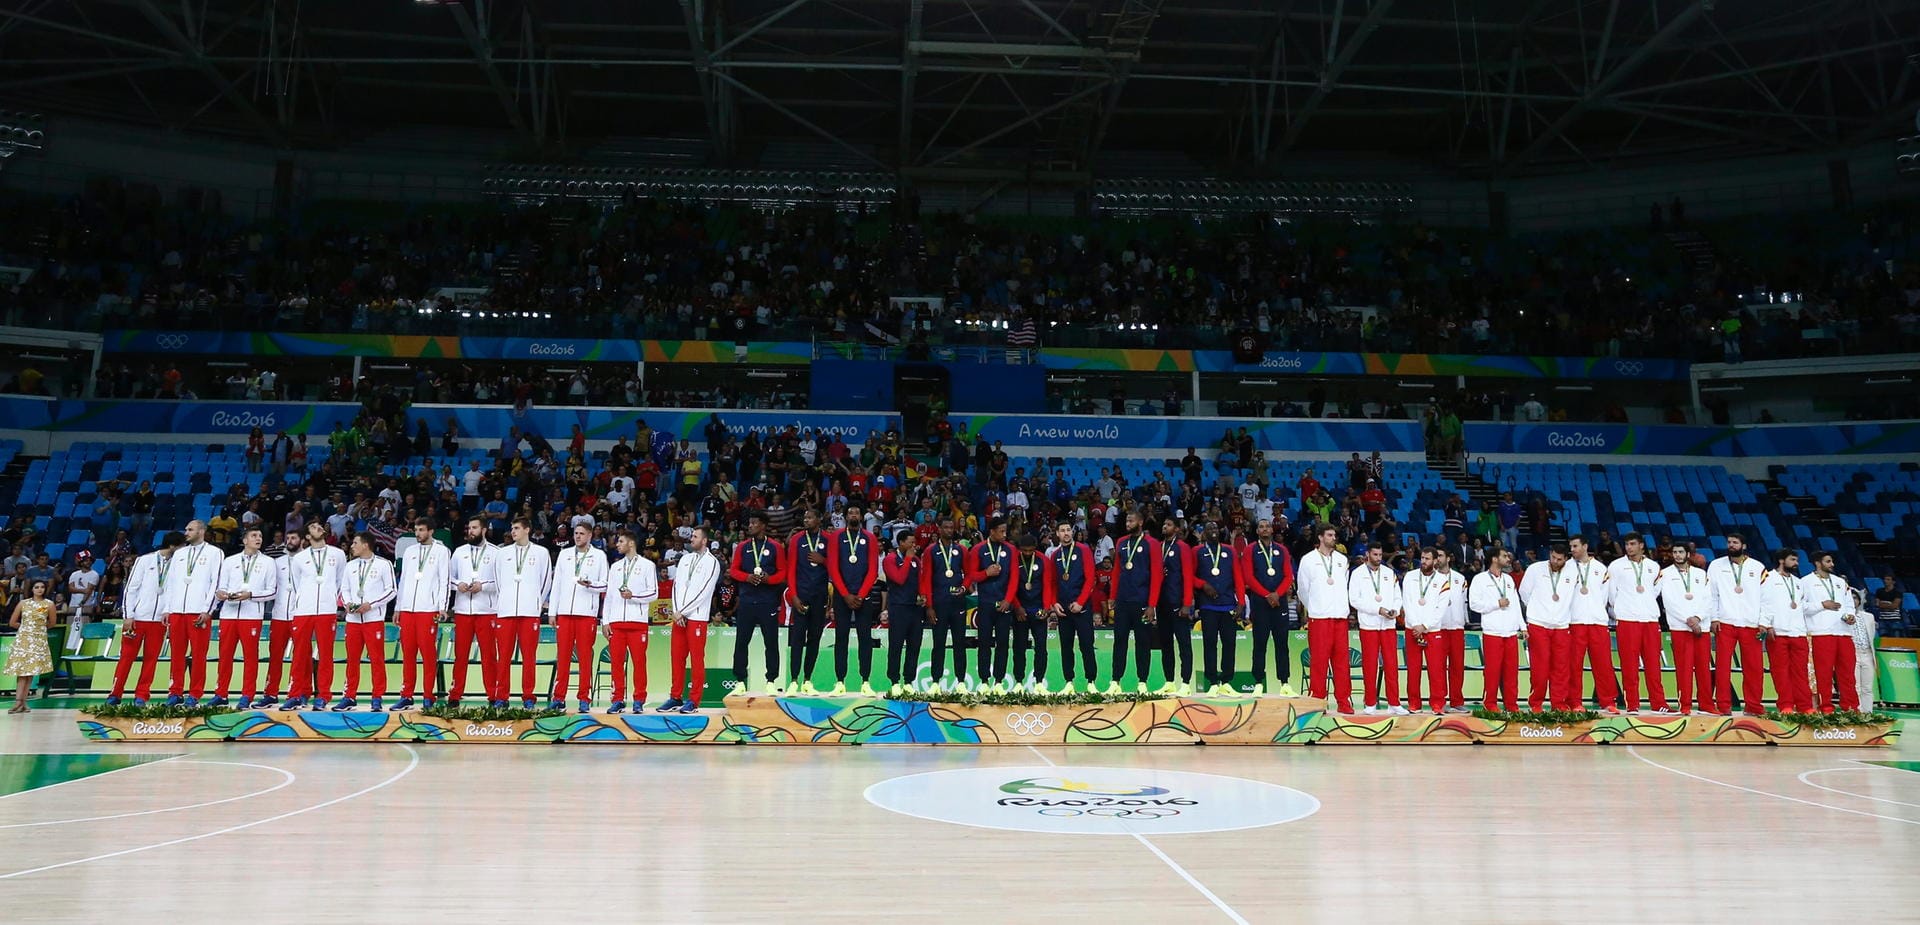 Großes Aufgebot: Die Basketballer von Serbien, der USA und Spanien (von links nach rechts) feiern ihre Medaillen bei den Olympischen Spielen.